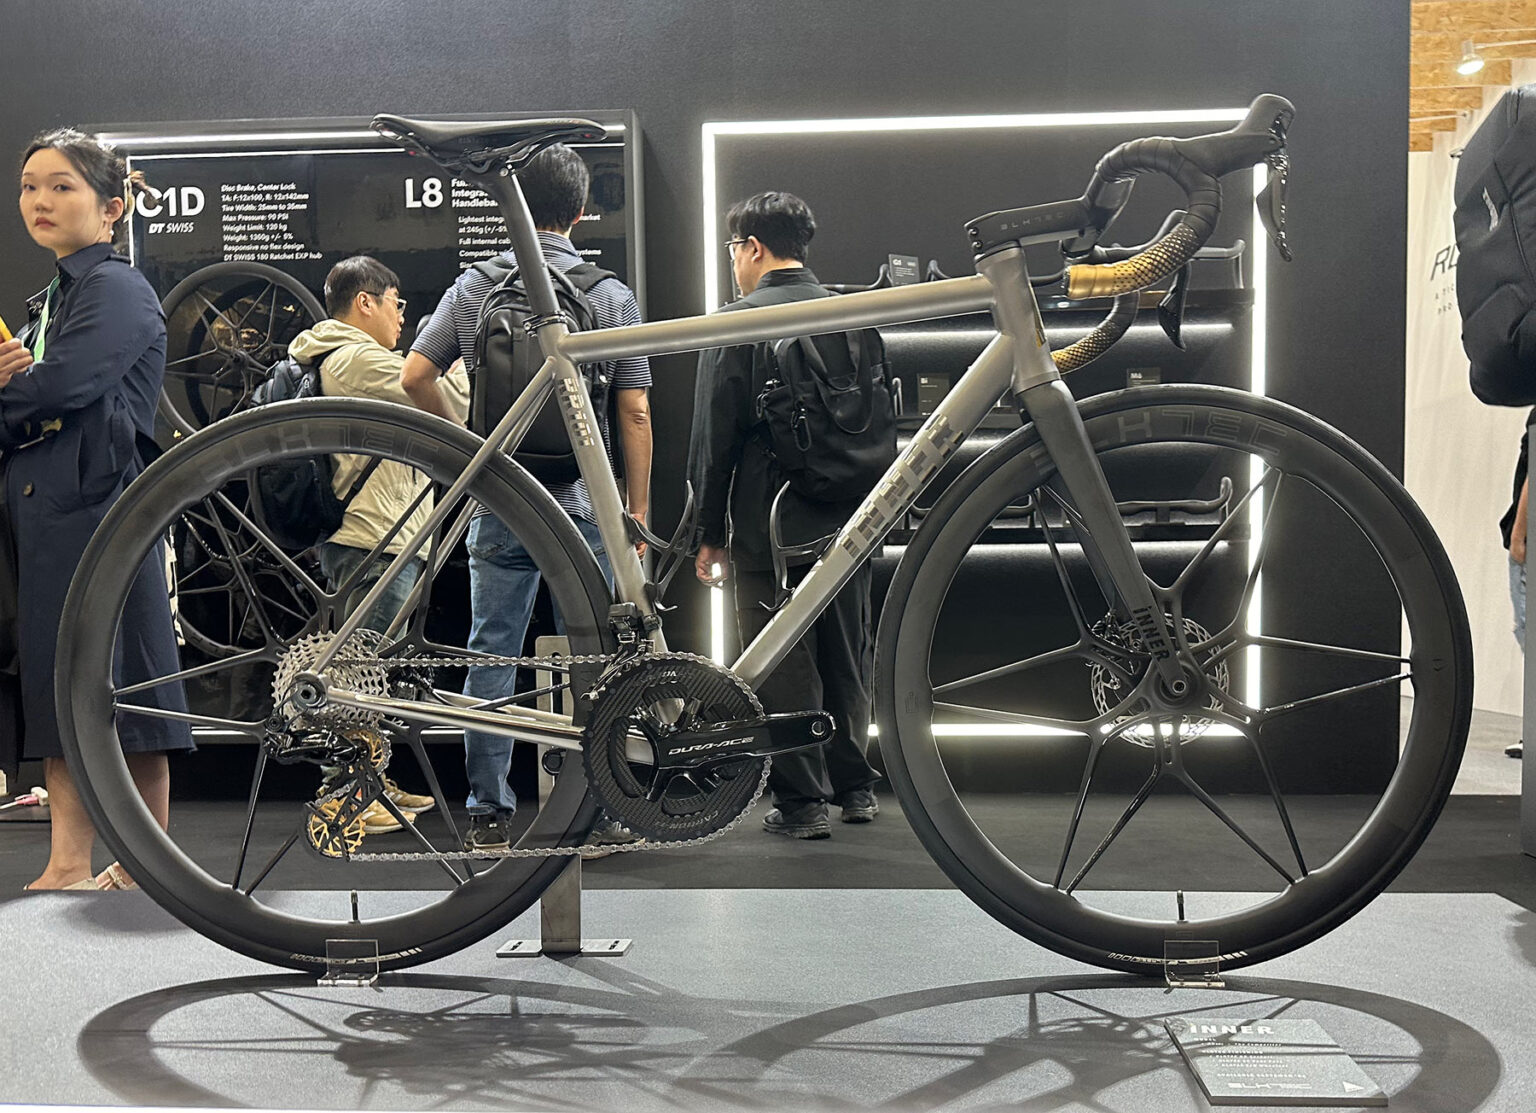 BLKTEC C1D one-piece carbon fiber road bike wheels on Inner titanium gravel bike